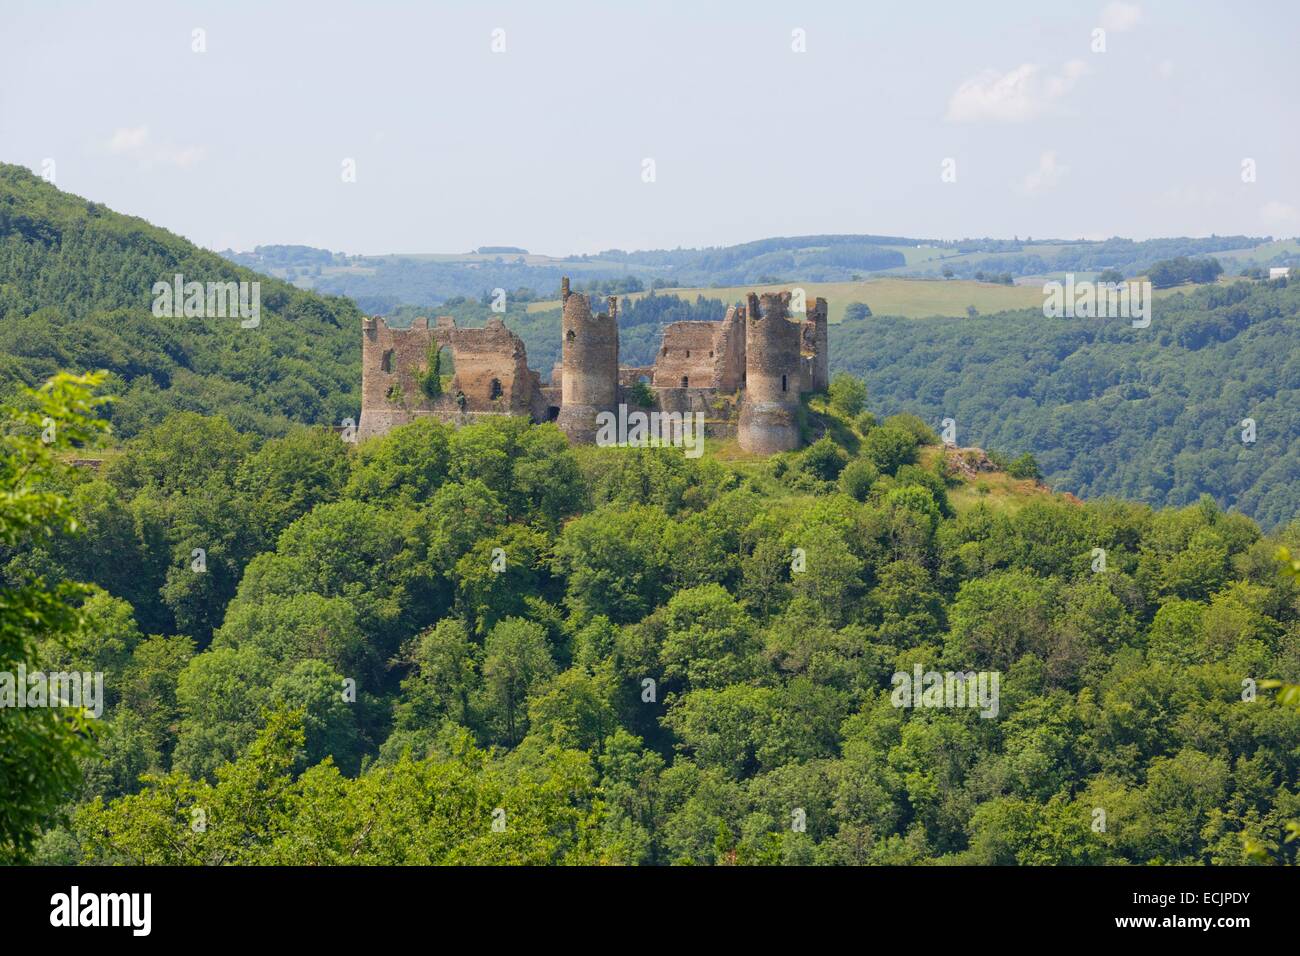 France, Puy de Dome, Saint Remy de Blot, Chateau Rocher, Rocher castle, Sioule valley Stock Photo